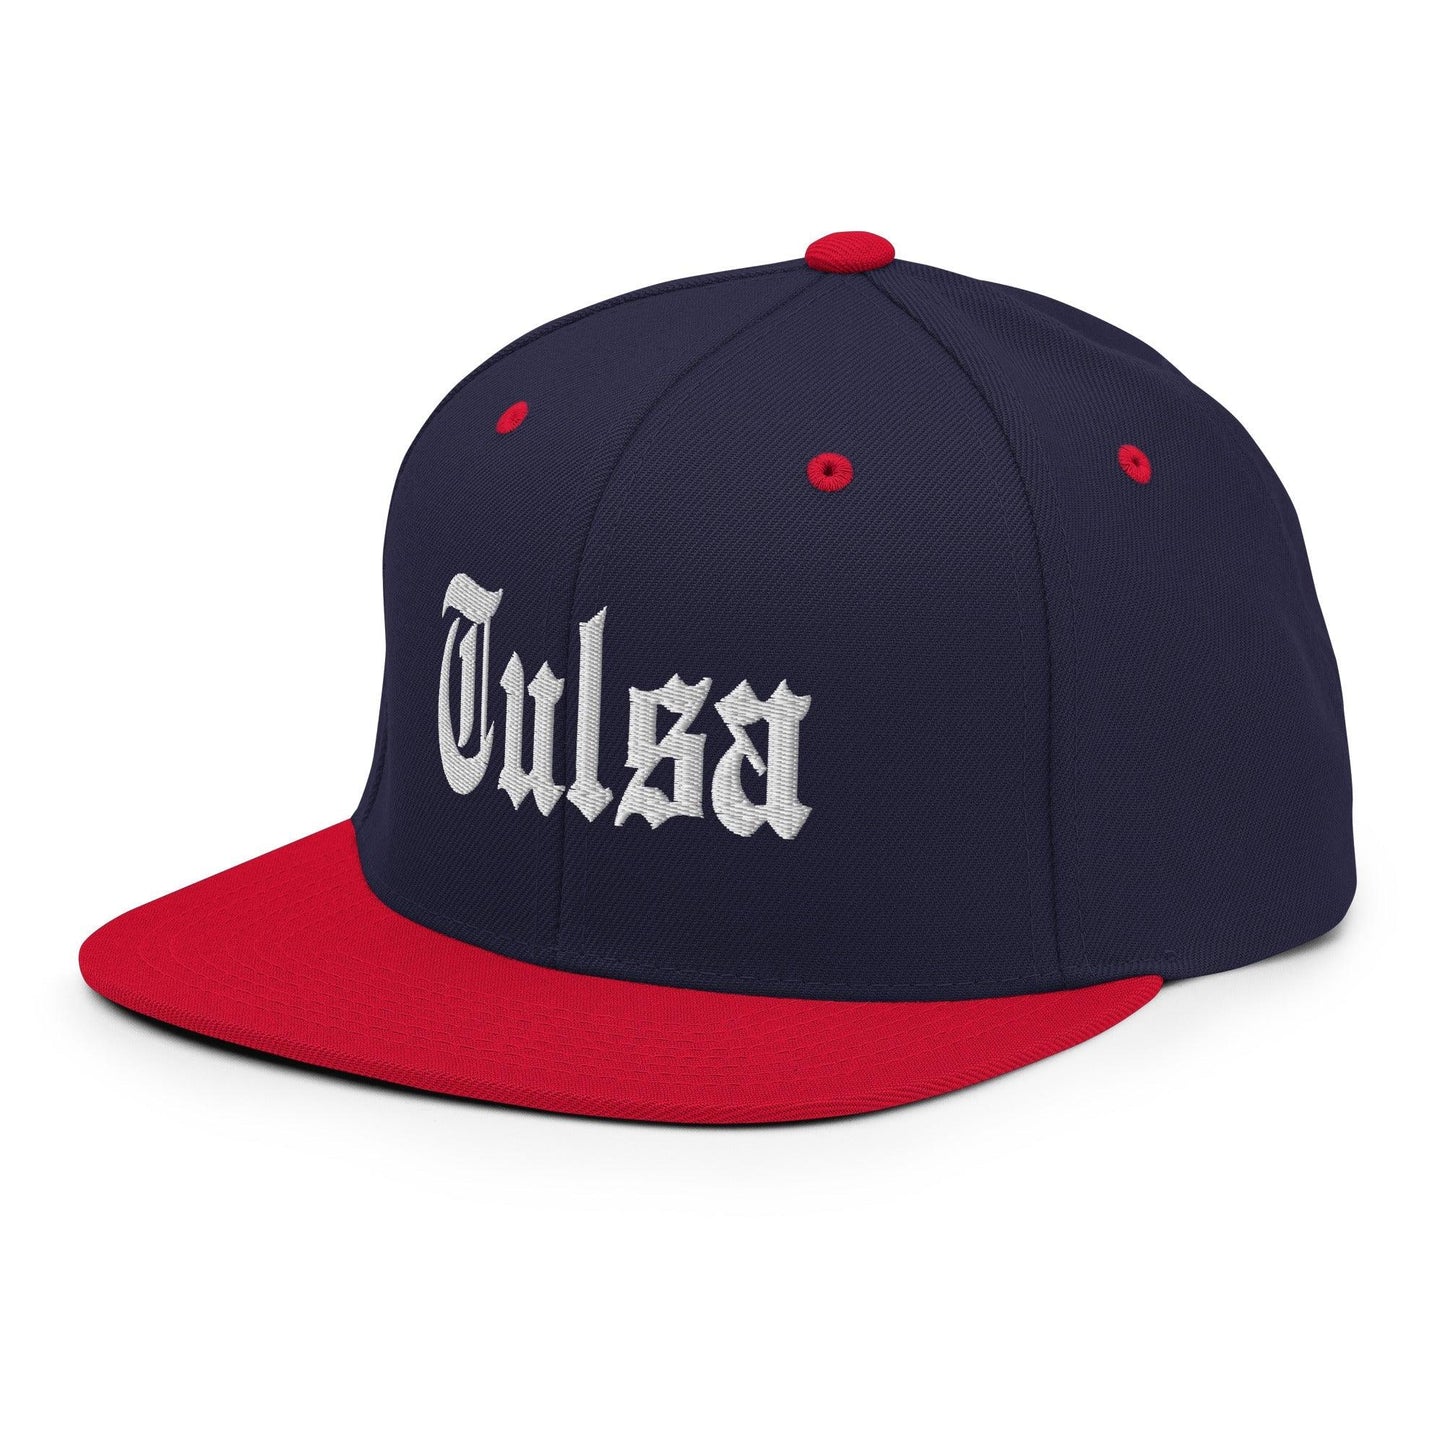 Tulsa OG Old English Snapback Hat Navy Red